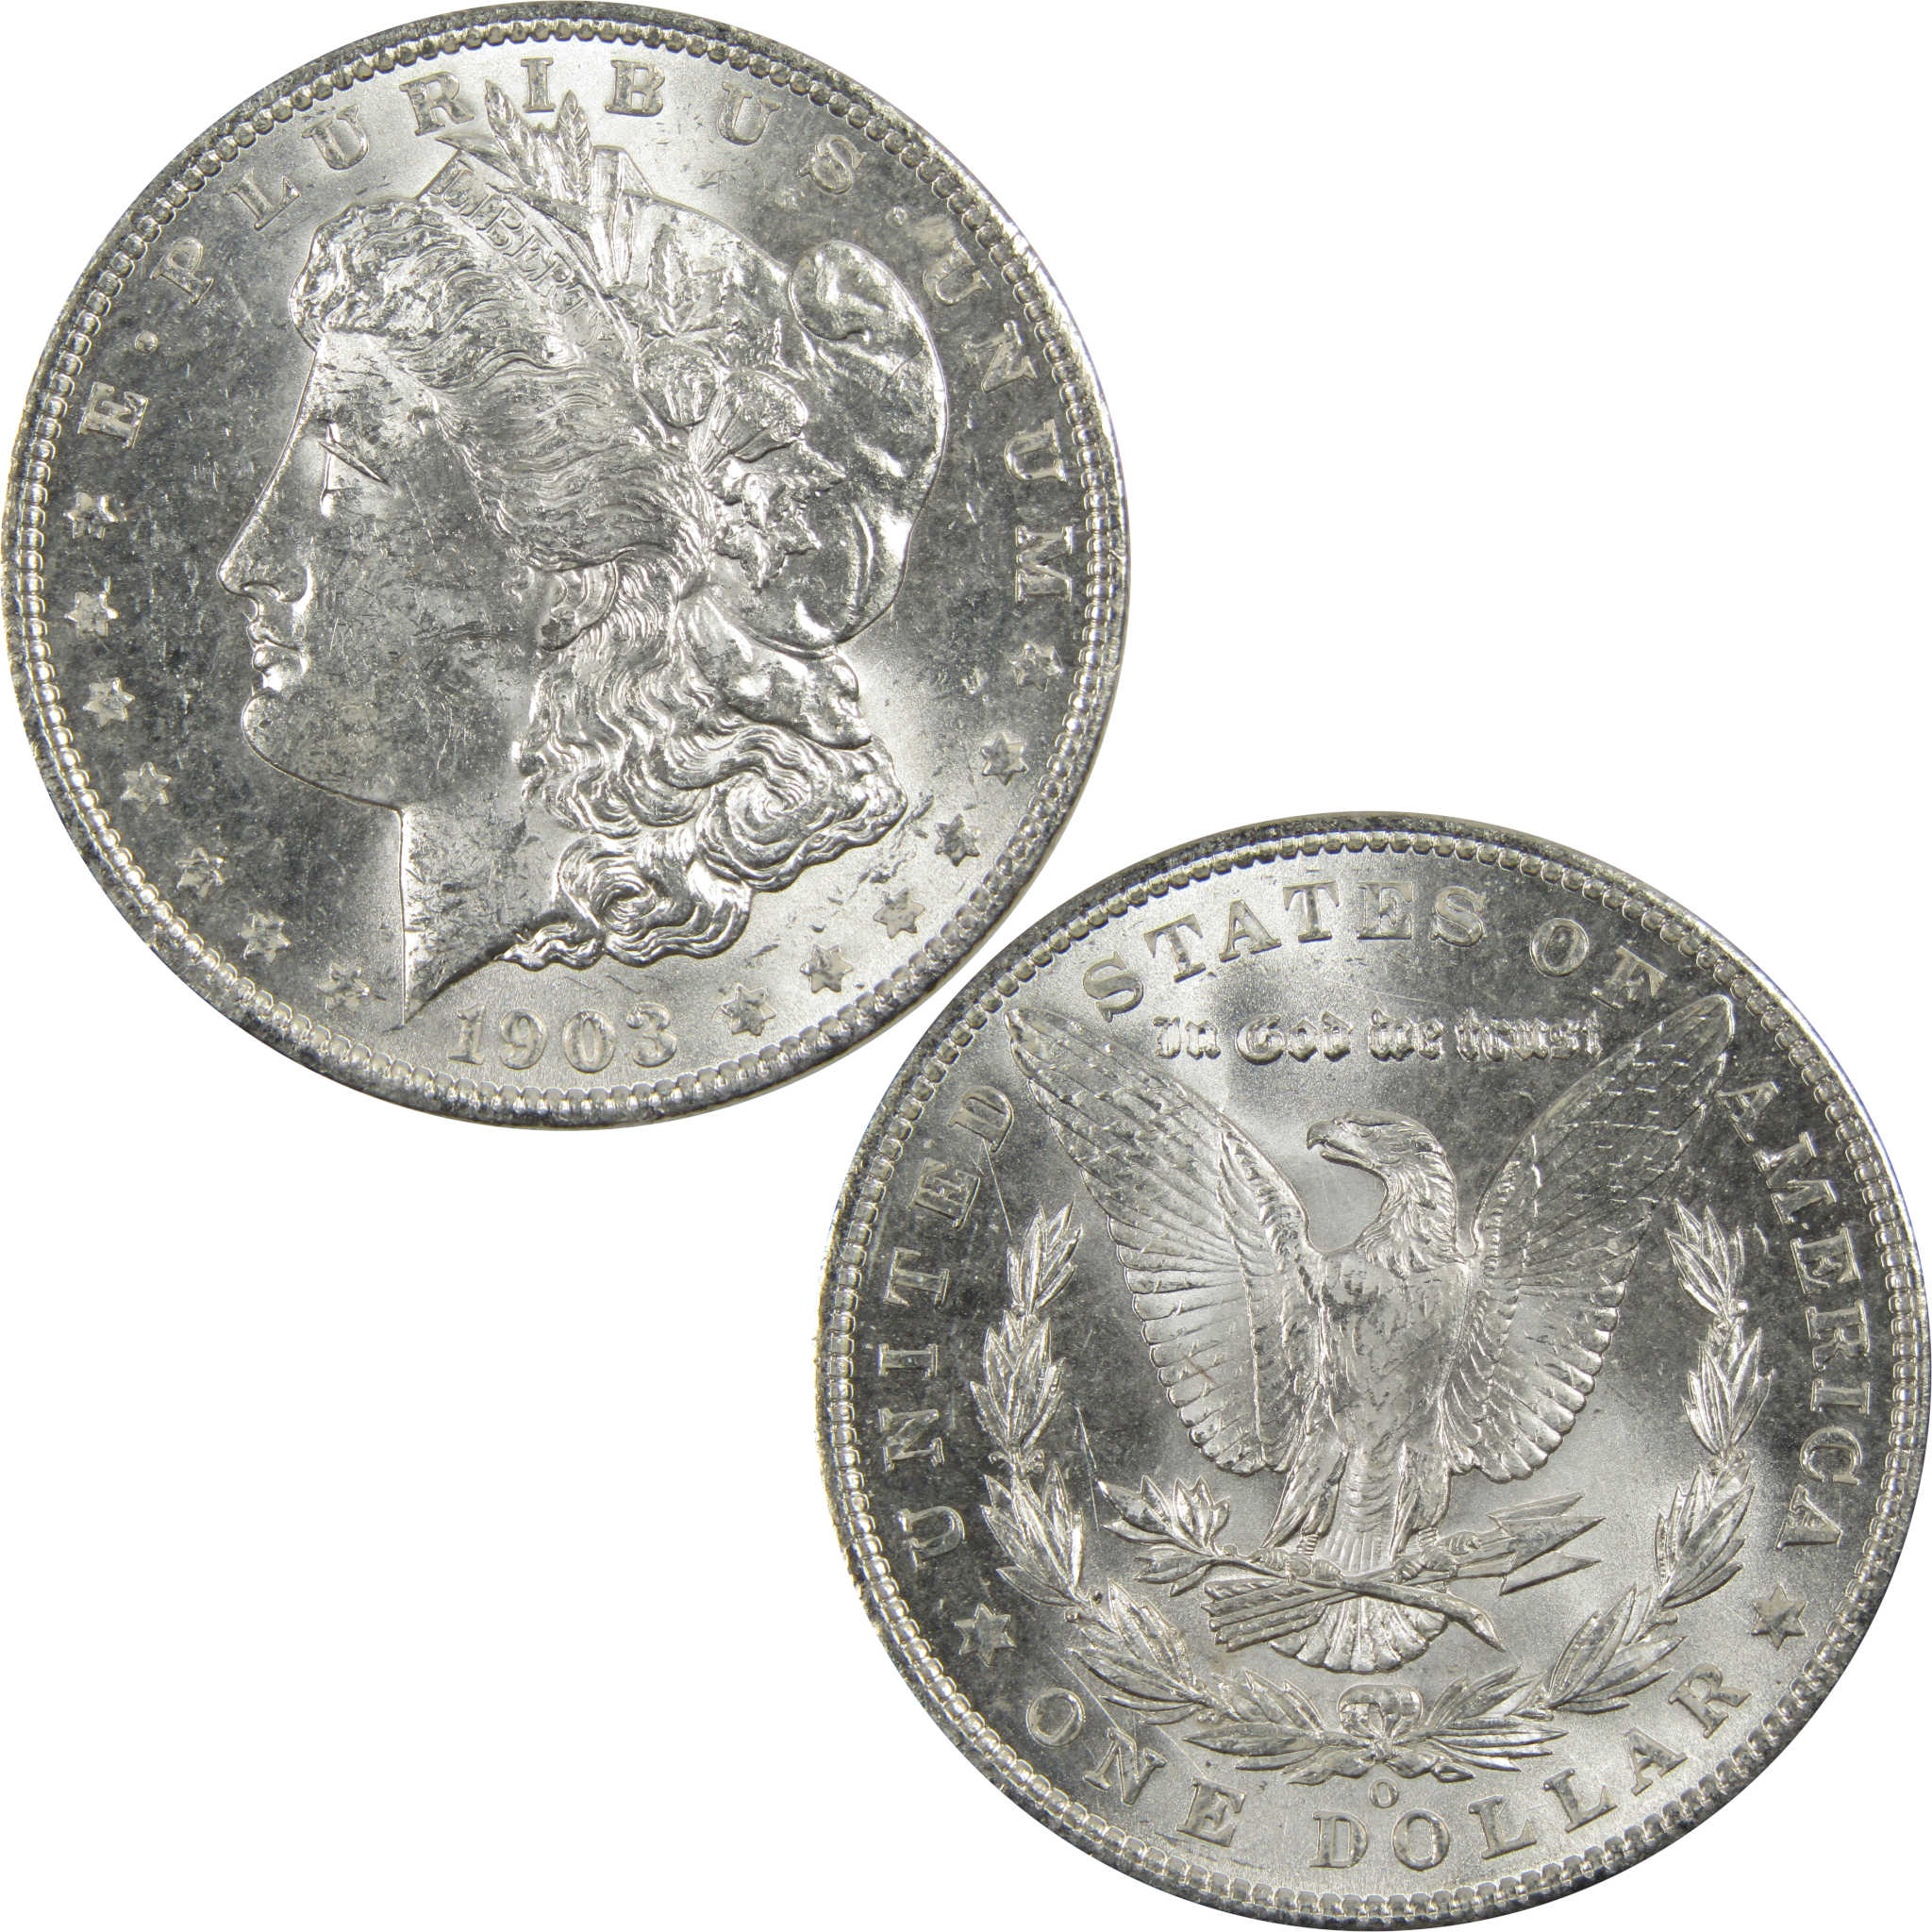 1903 O Morgan Dollar BU Choice Uncirculated 90% Silver $1 SKU:I7909 - Morgan coin - Morgan silver dollar - Morgan silver dollar for sale - Profile Coins &amp; Collectibles